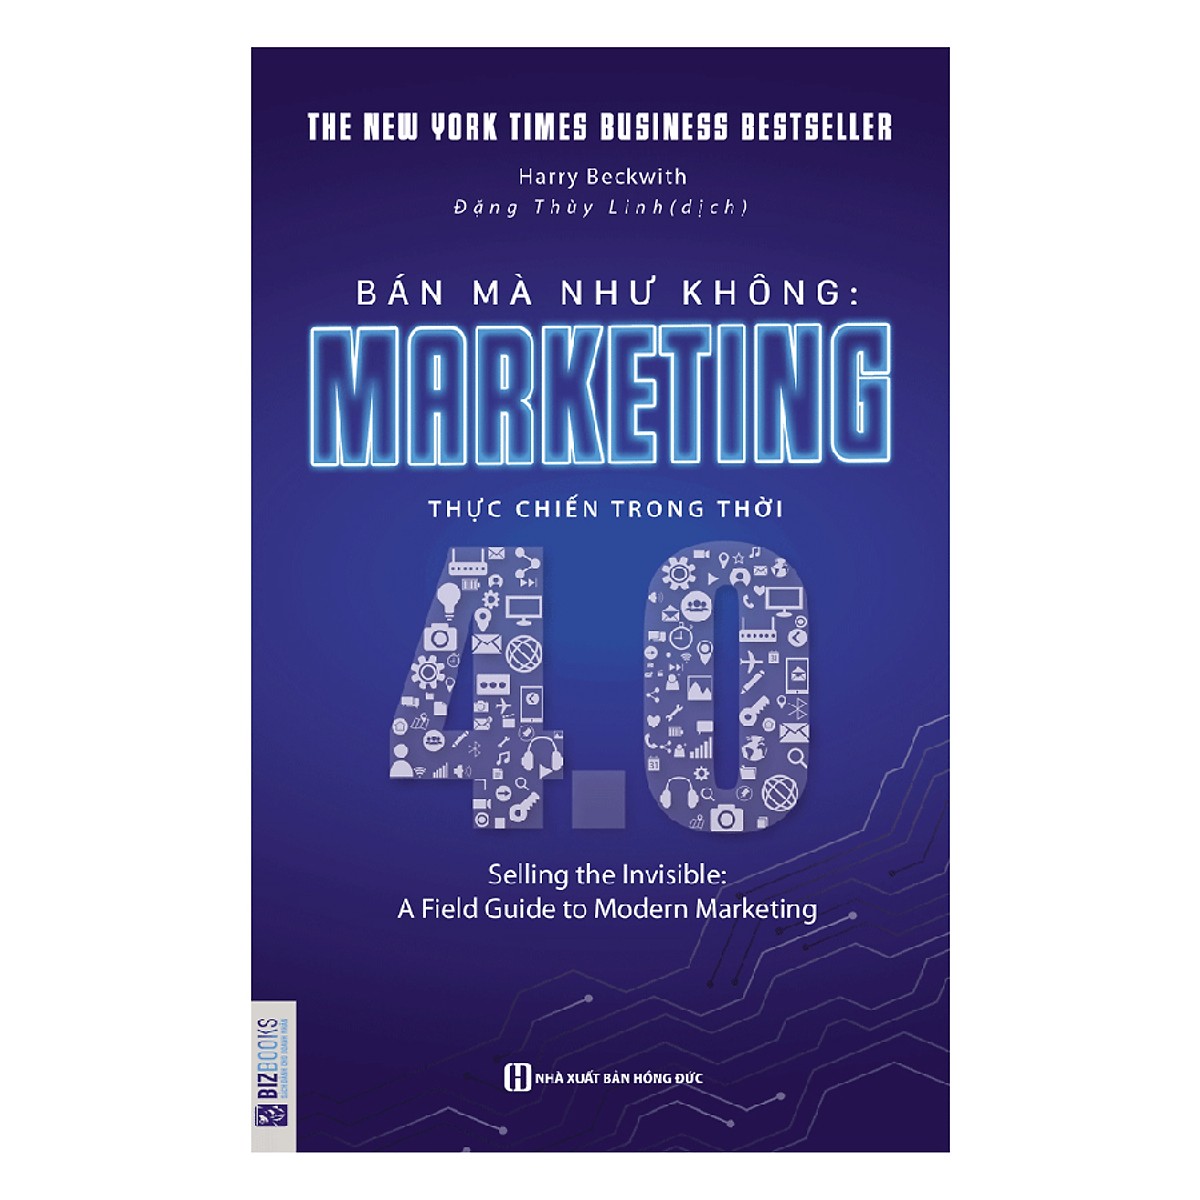 Combo 2 Cuốn Sách Về Marketing Được Ưa Chuộng Nhất Hiện Nay (Bán mà Như không - Marketing thực chiến trong thời 4.0 + Những chiến lược Marketing tạo ra lợi nhuận) + Tặng kèm bookmark